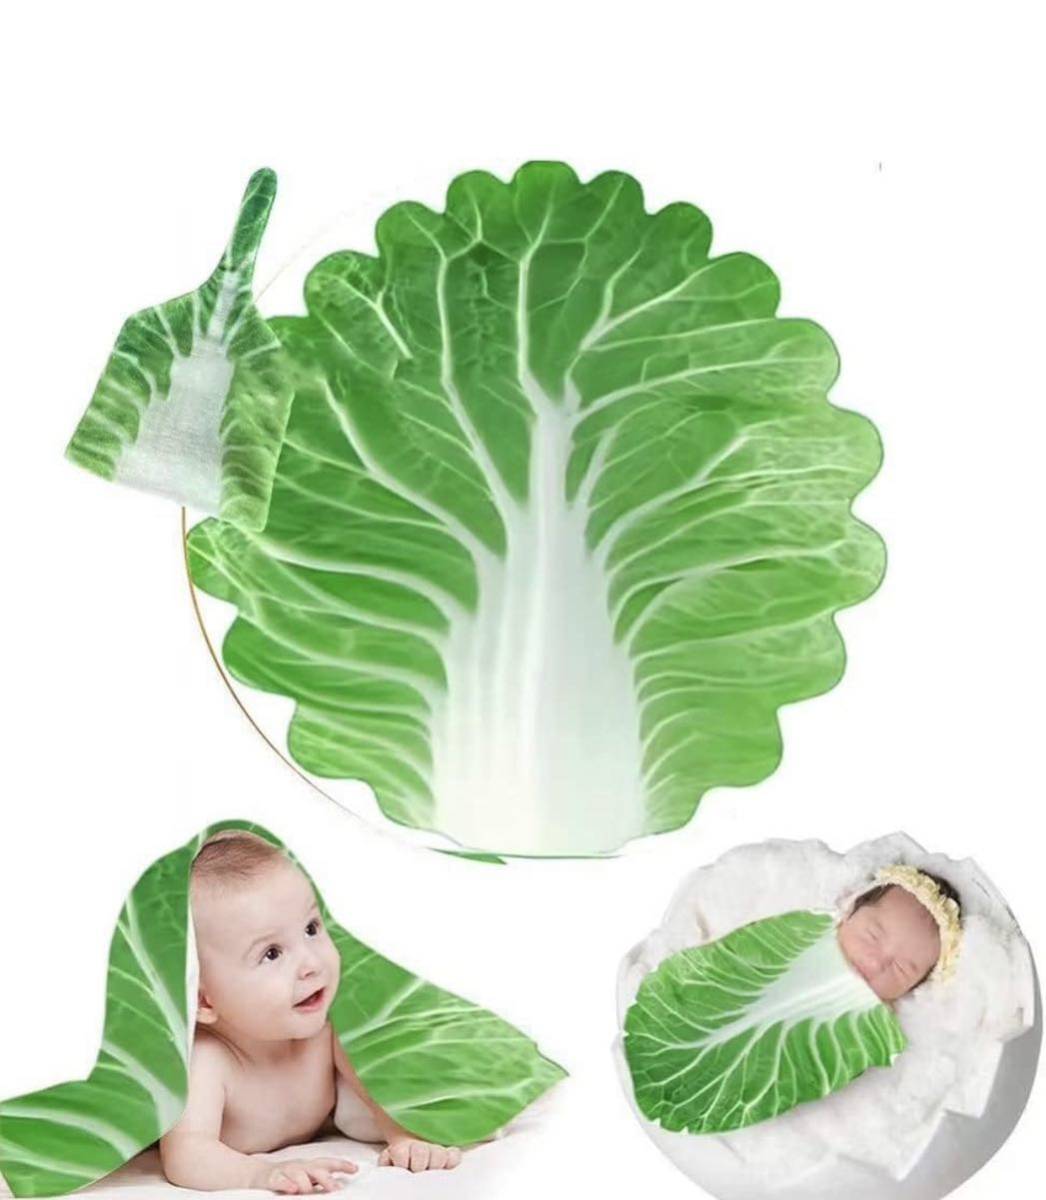 収納袋付き！おくるみ 新生児 野菜 ガーゼ 抱っこ布団 白菜おくるみ 授乳ケープの画像1